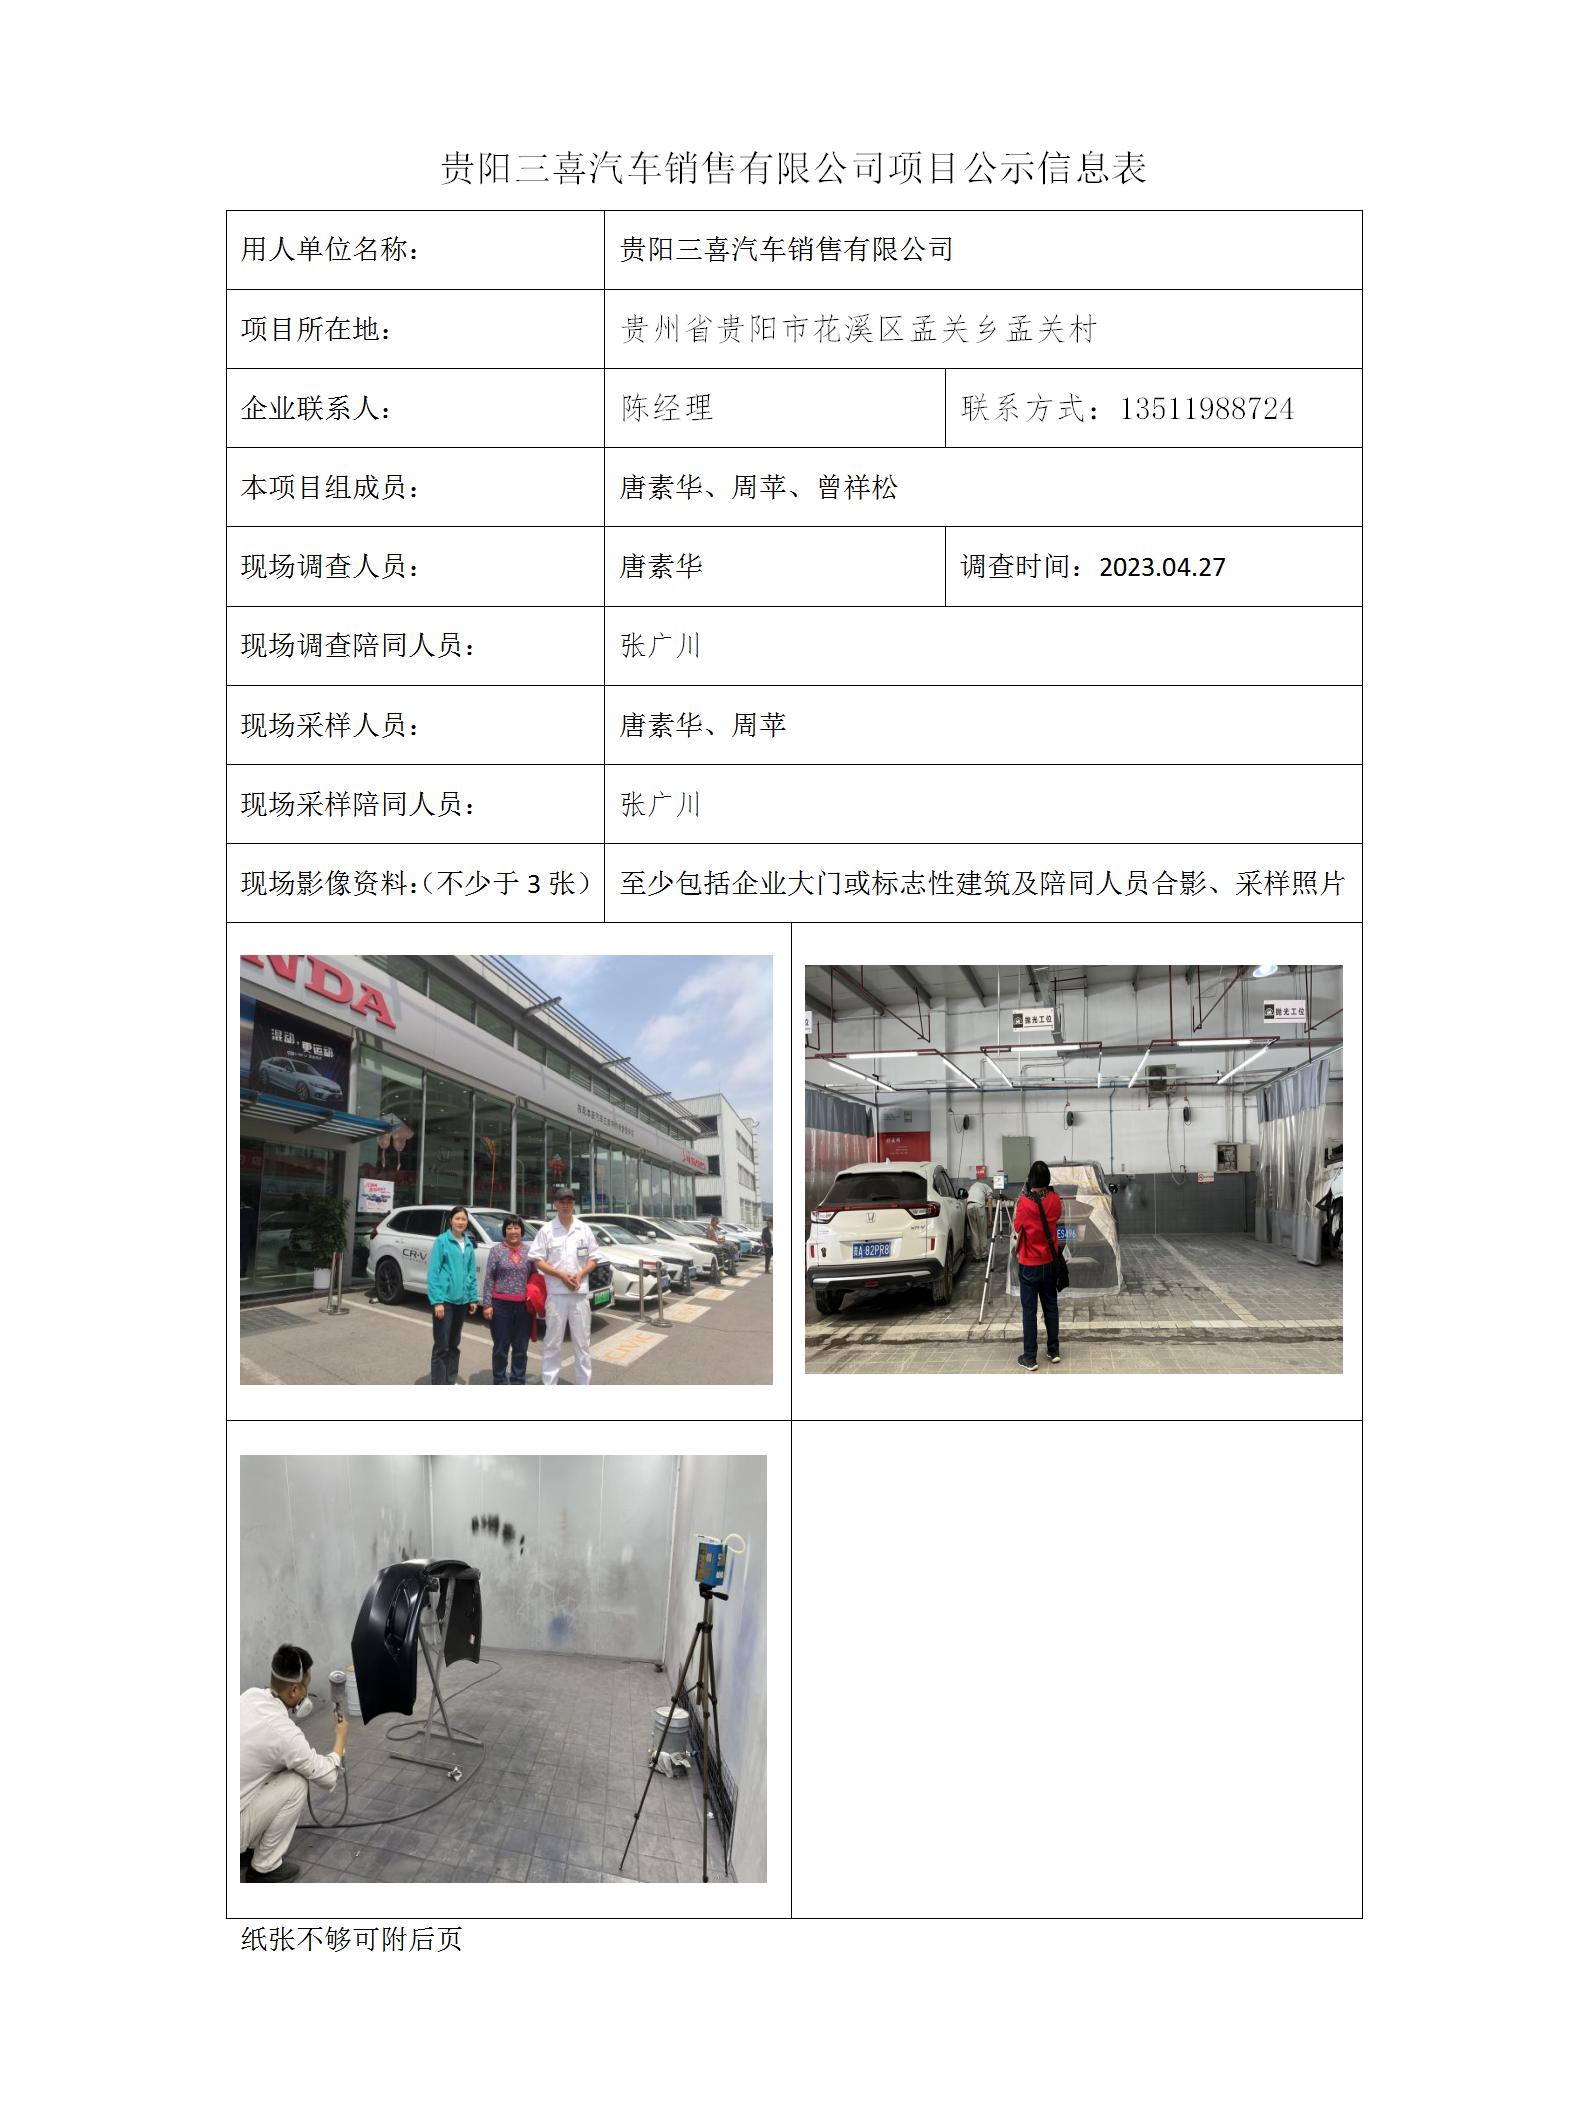 贵阳三喜汽车销售有限公司项目公示信息表_01.jpg